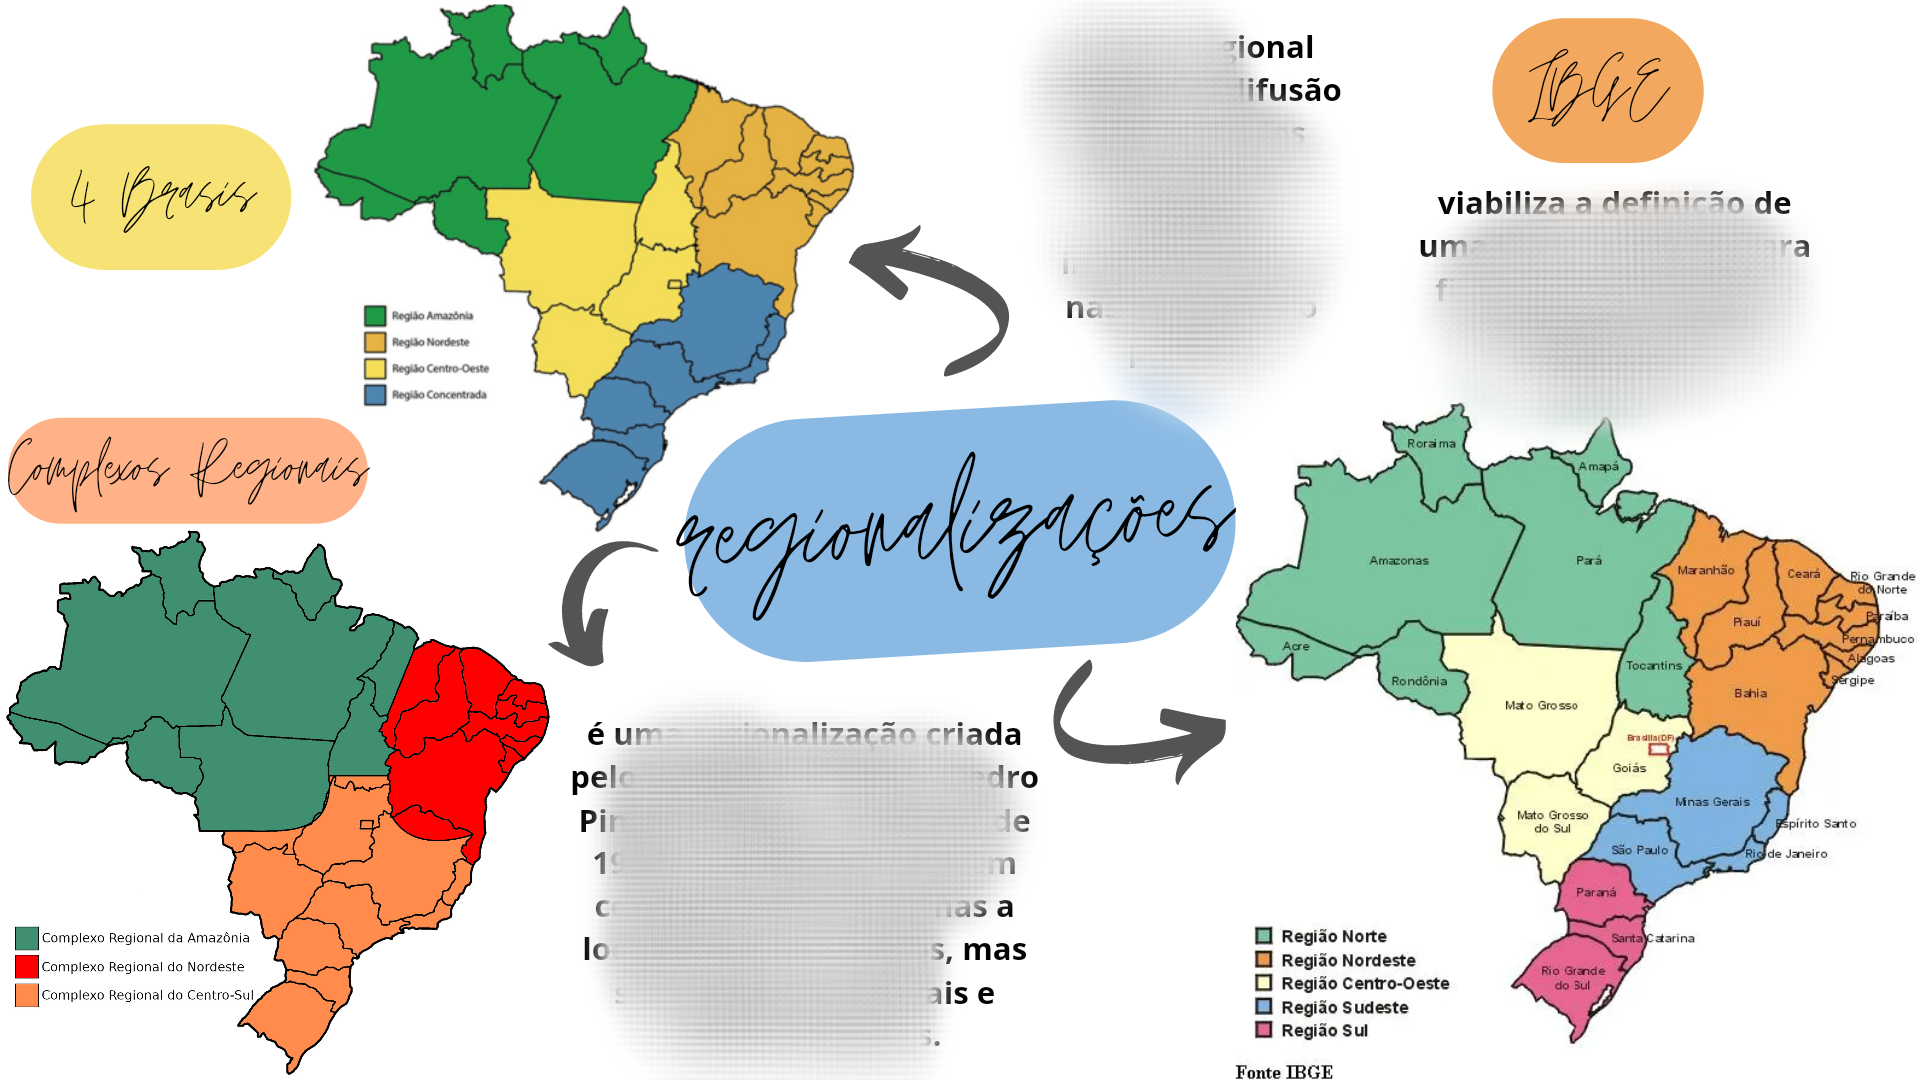 Divisão Regional e Regionalização do Brasil (RESUMO)